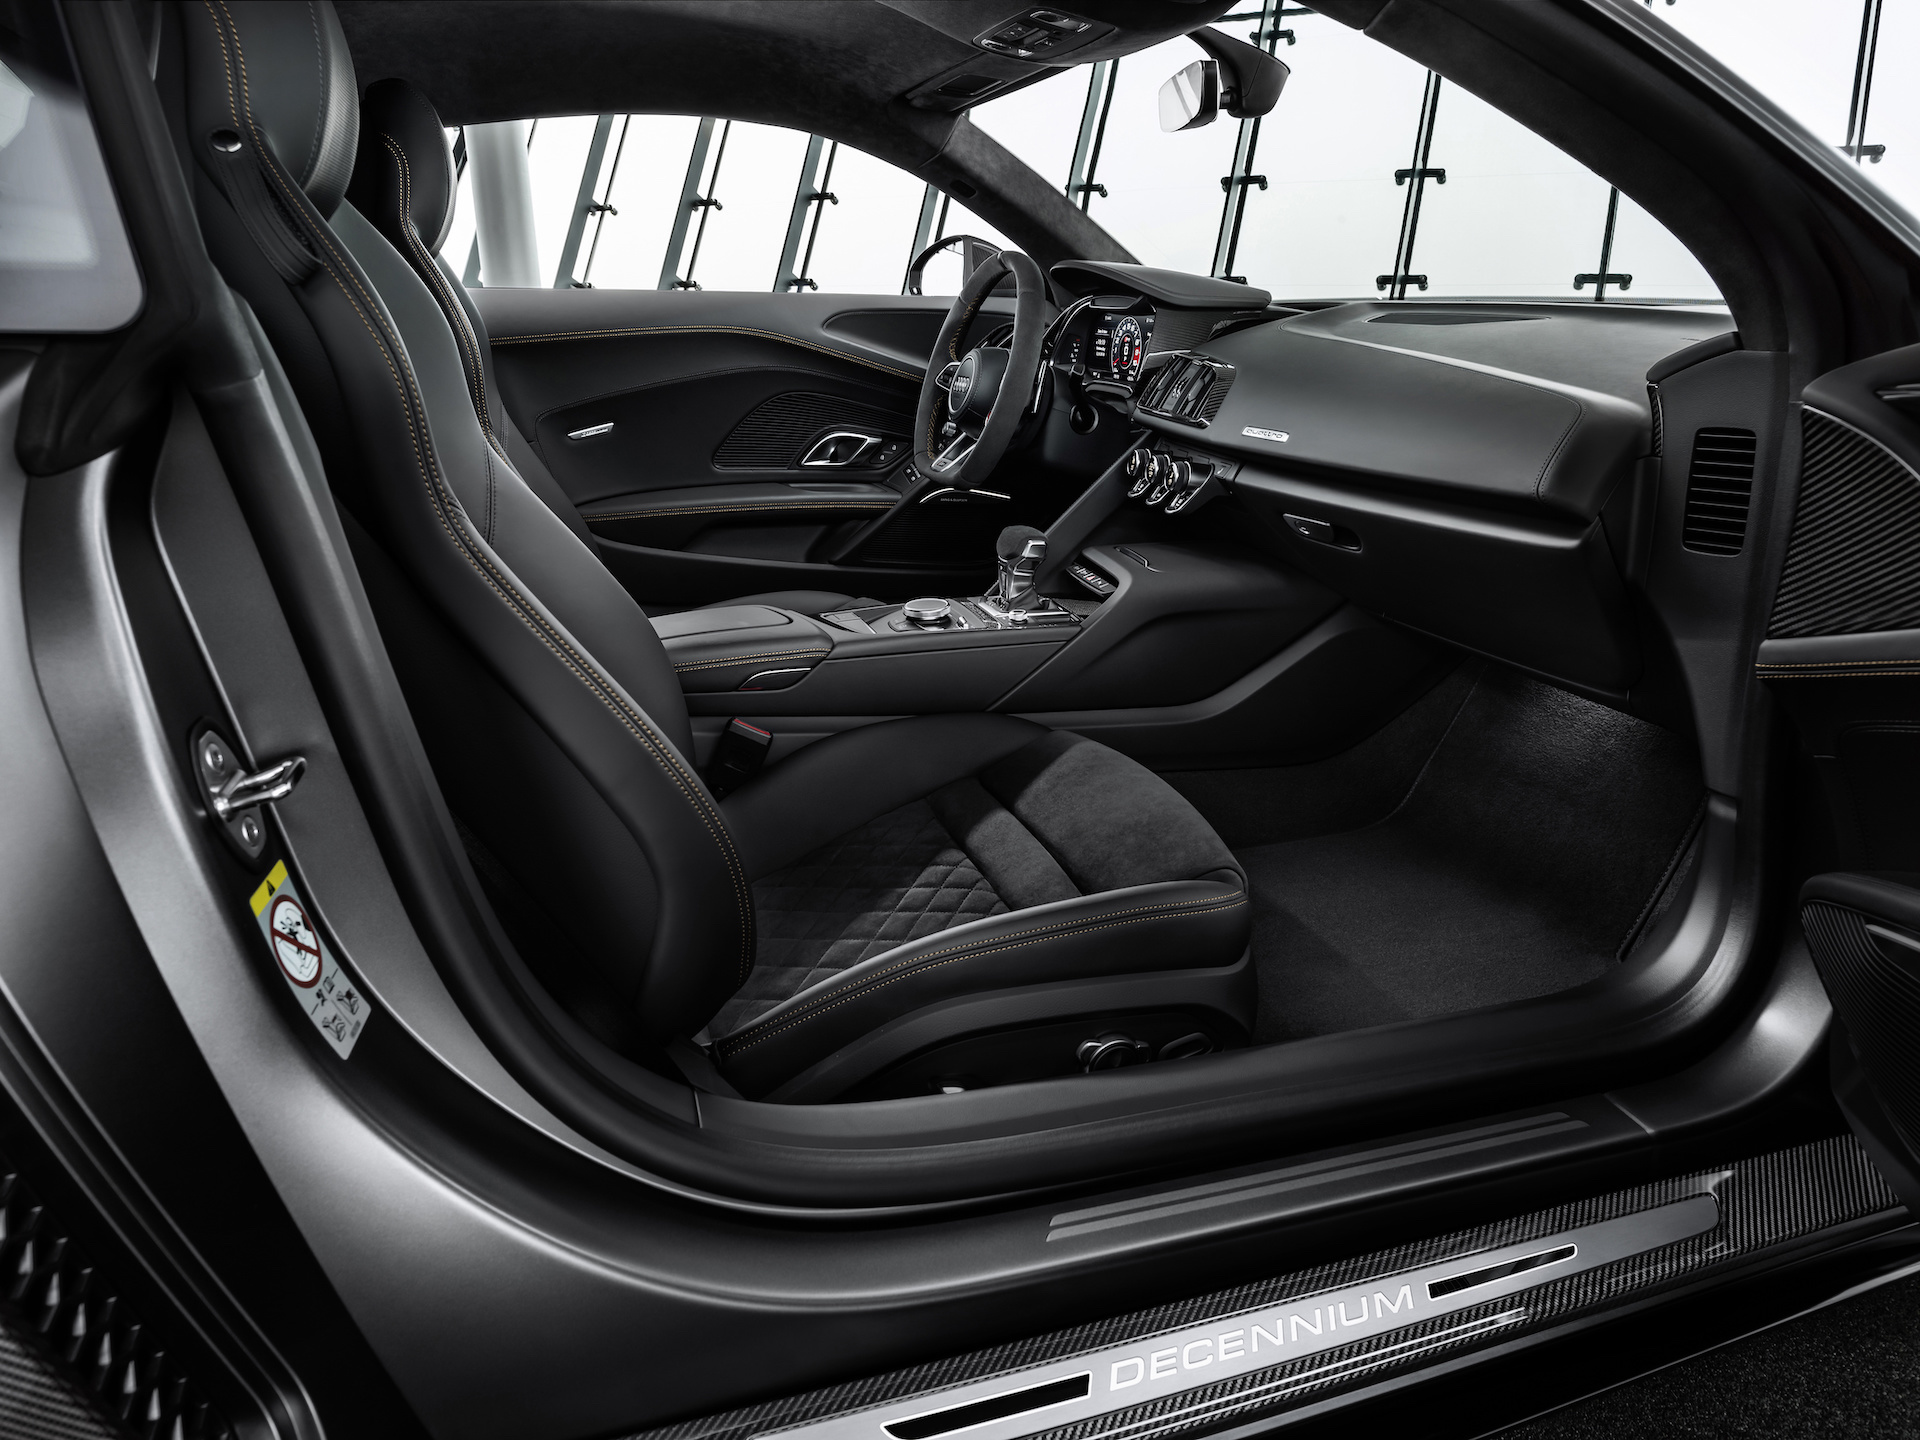 View In Gallery 2019 Audi R8 V10 Decennium Interior - Audi R8 Decennium Interior , HD Wallpaper & Backgrounds